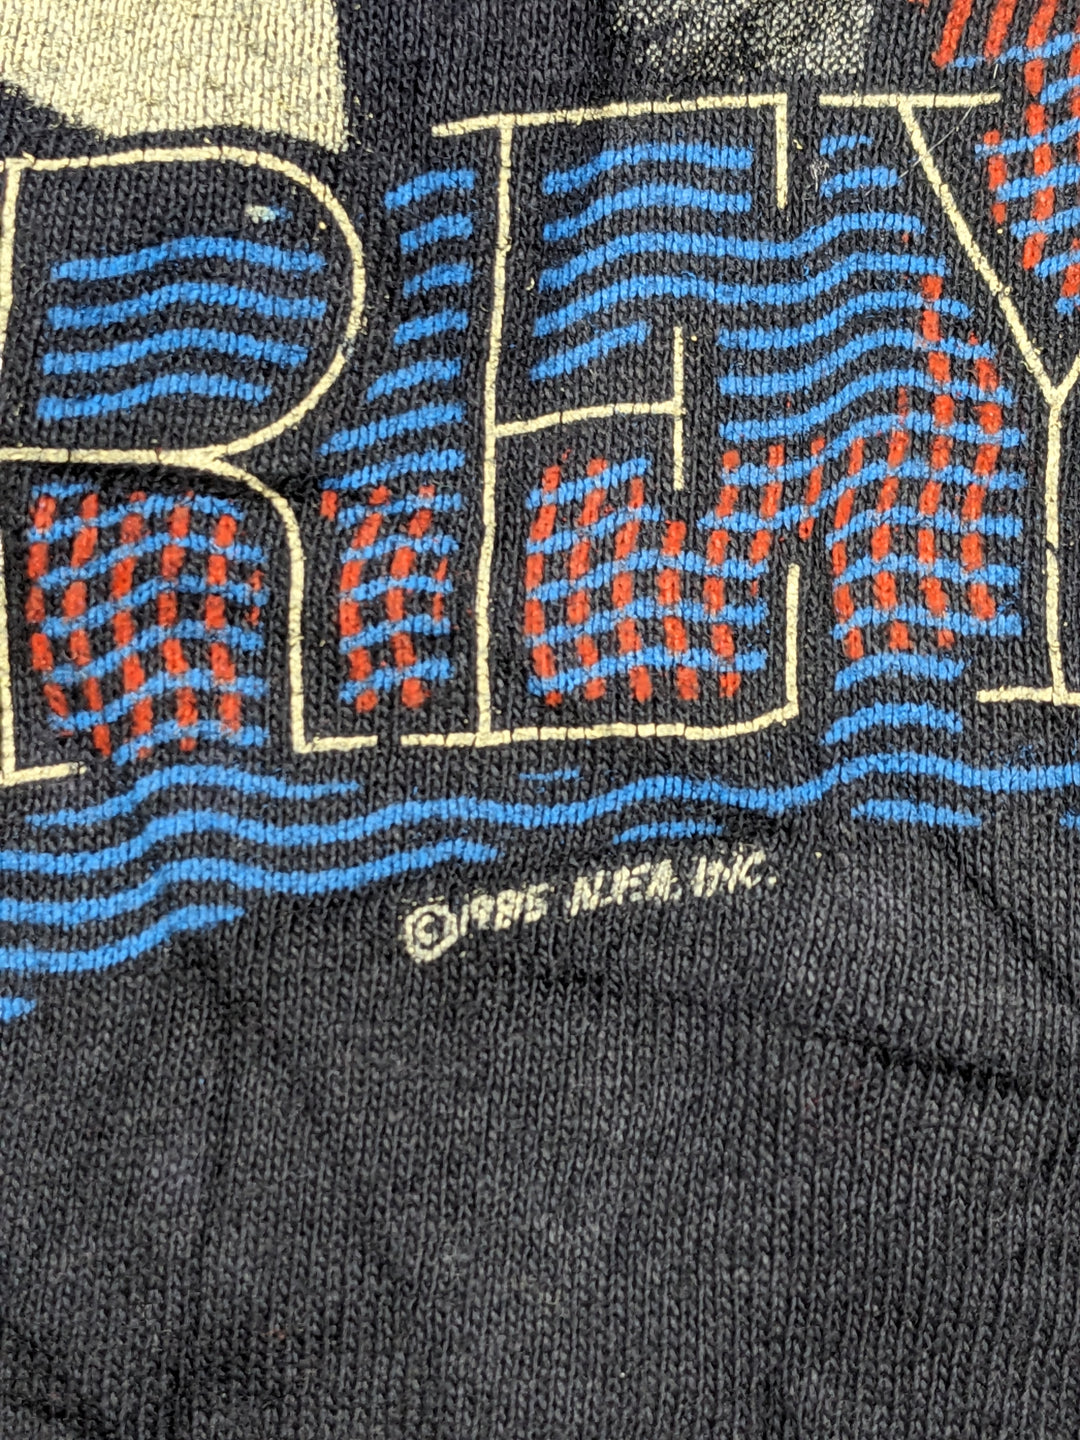 Vintage 1985 Glenn Frey T-Shirt 1 pc 1 lb D0416222